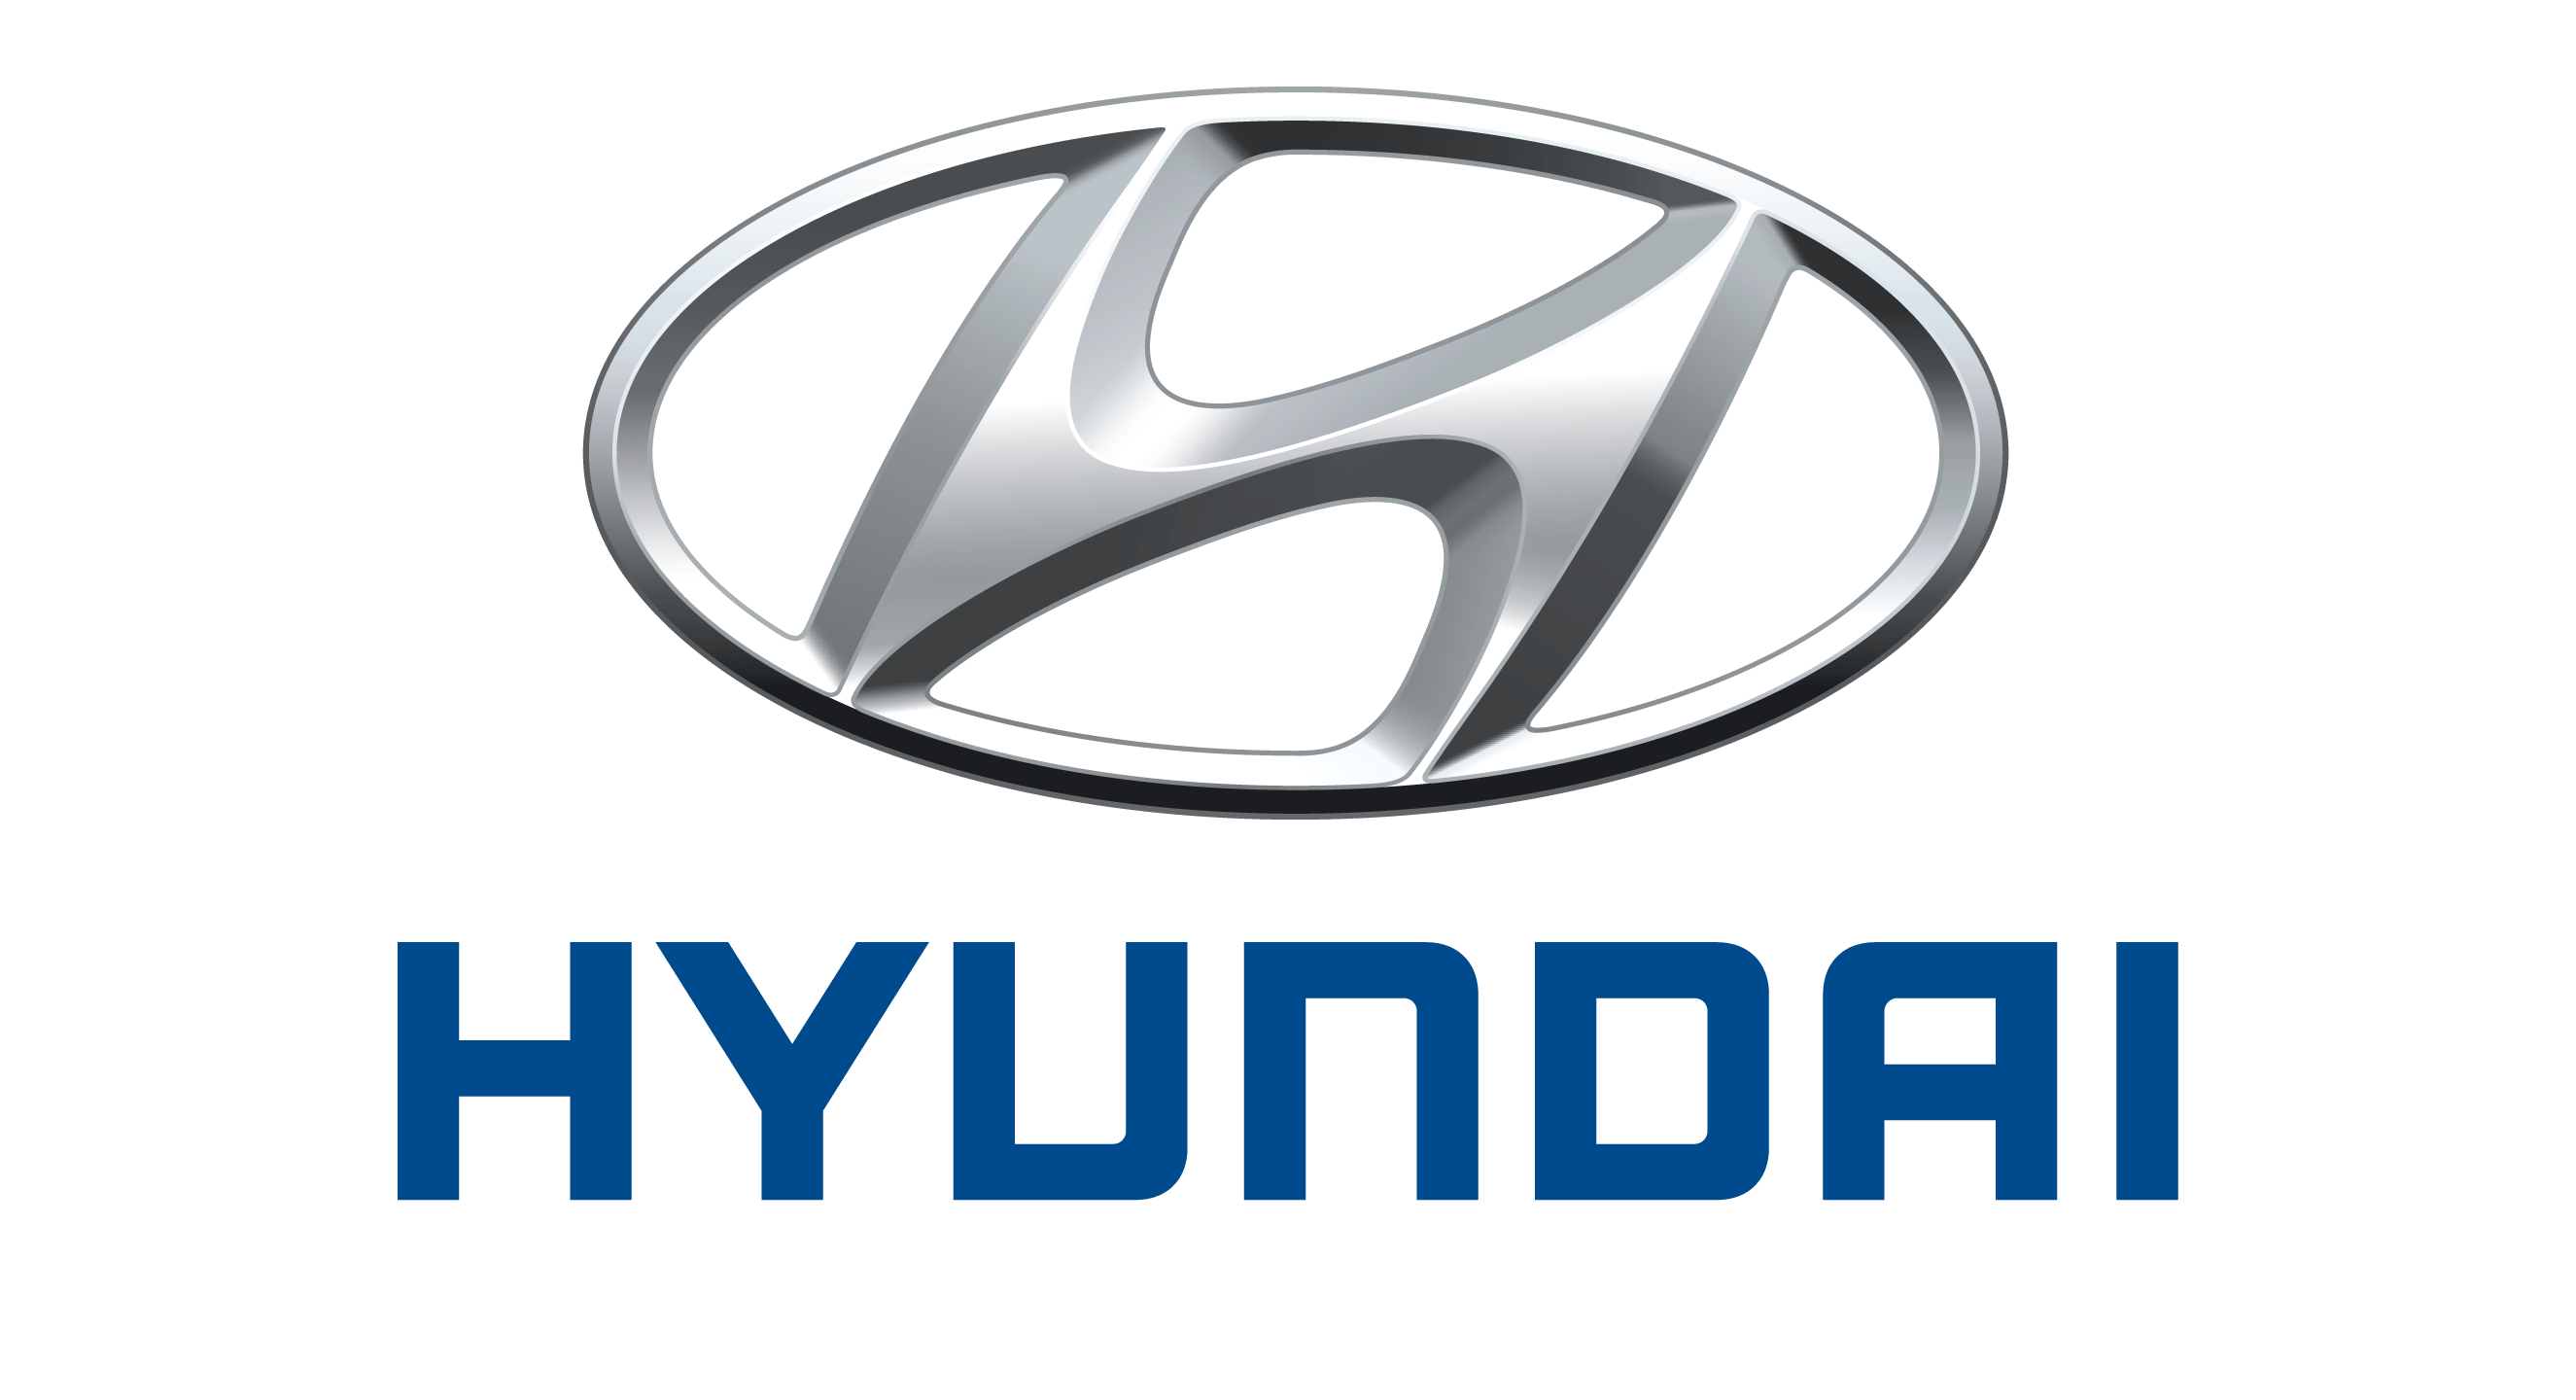 logo xe hyundai moi nhat - Toyota Vios 2020: giá bán và khuyến mãi cập nhật mỗi 2 phút